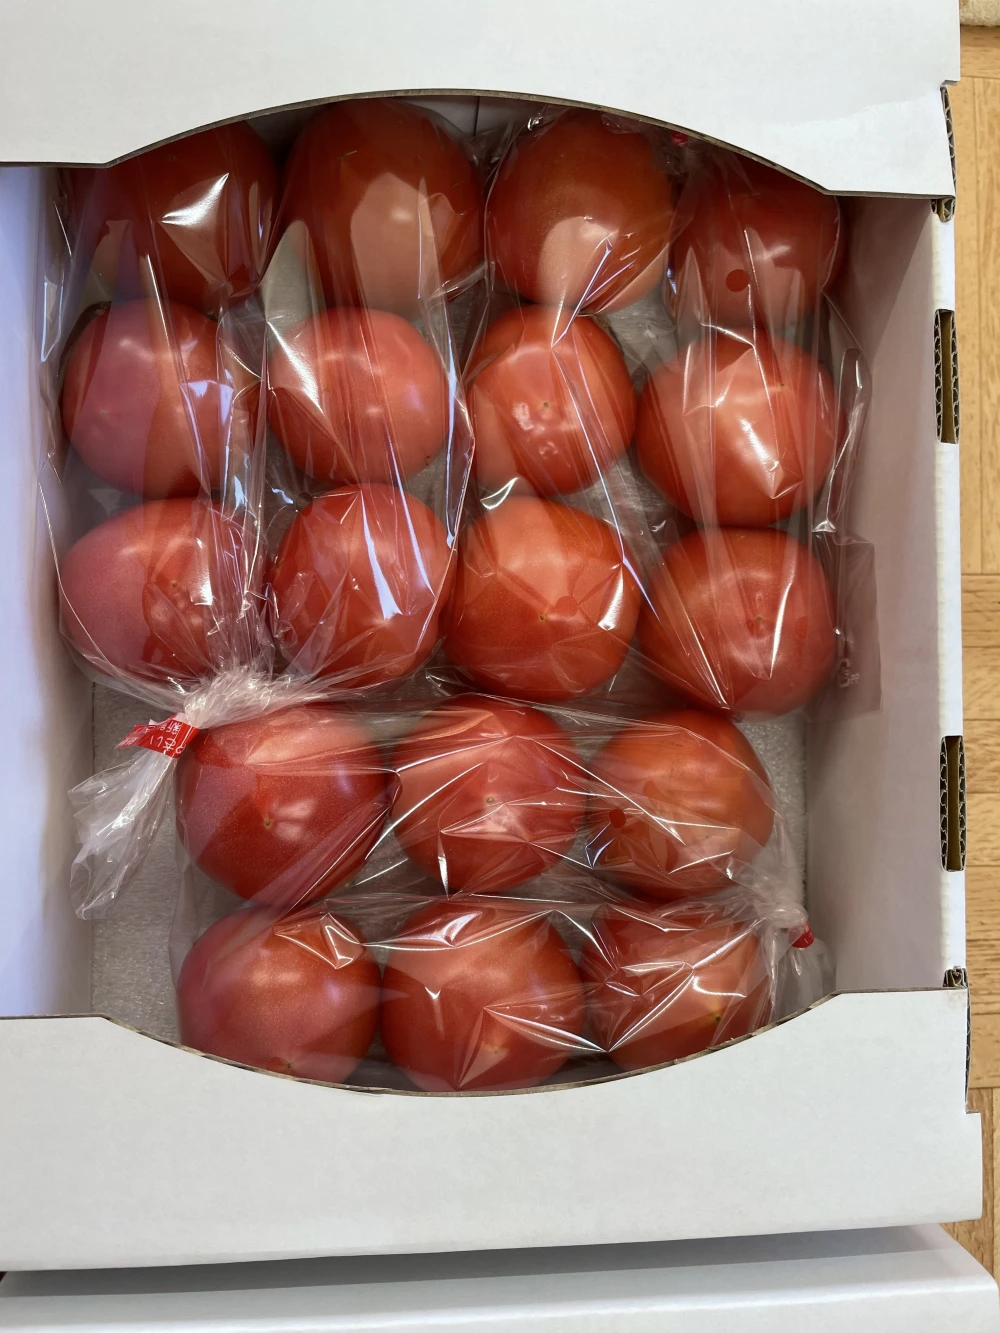 【まるでフルーツ！】旨味が詰まったひと口サイズの桃太郎トマト♡食べたらトリコ